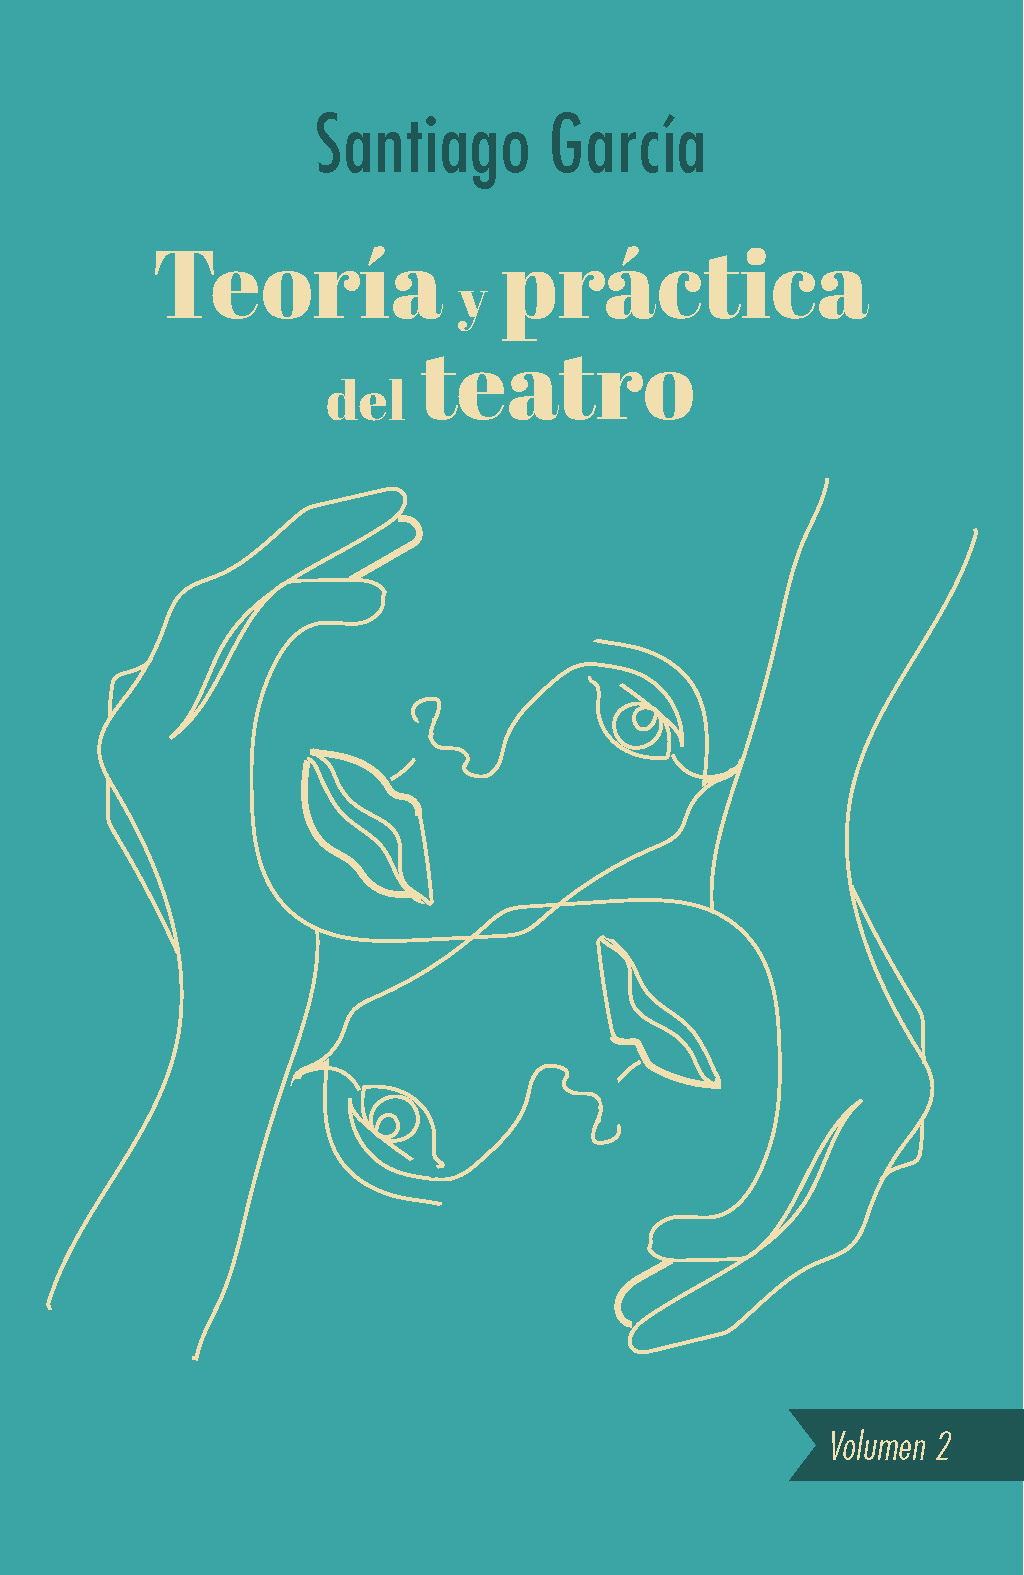 Libros - Teoría y práctica del teatro. Vol. 2